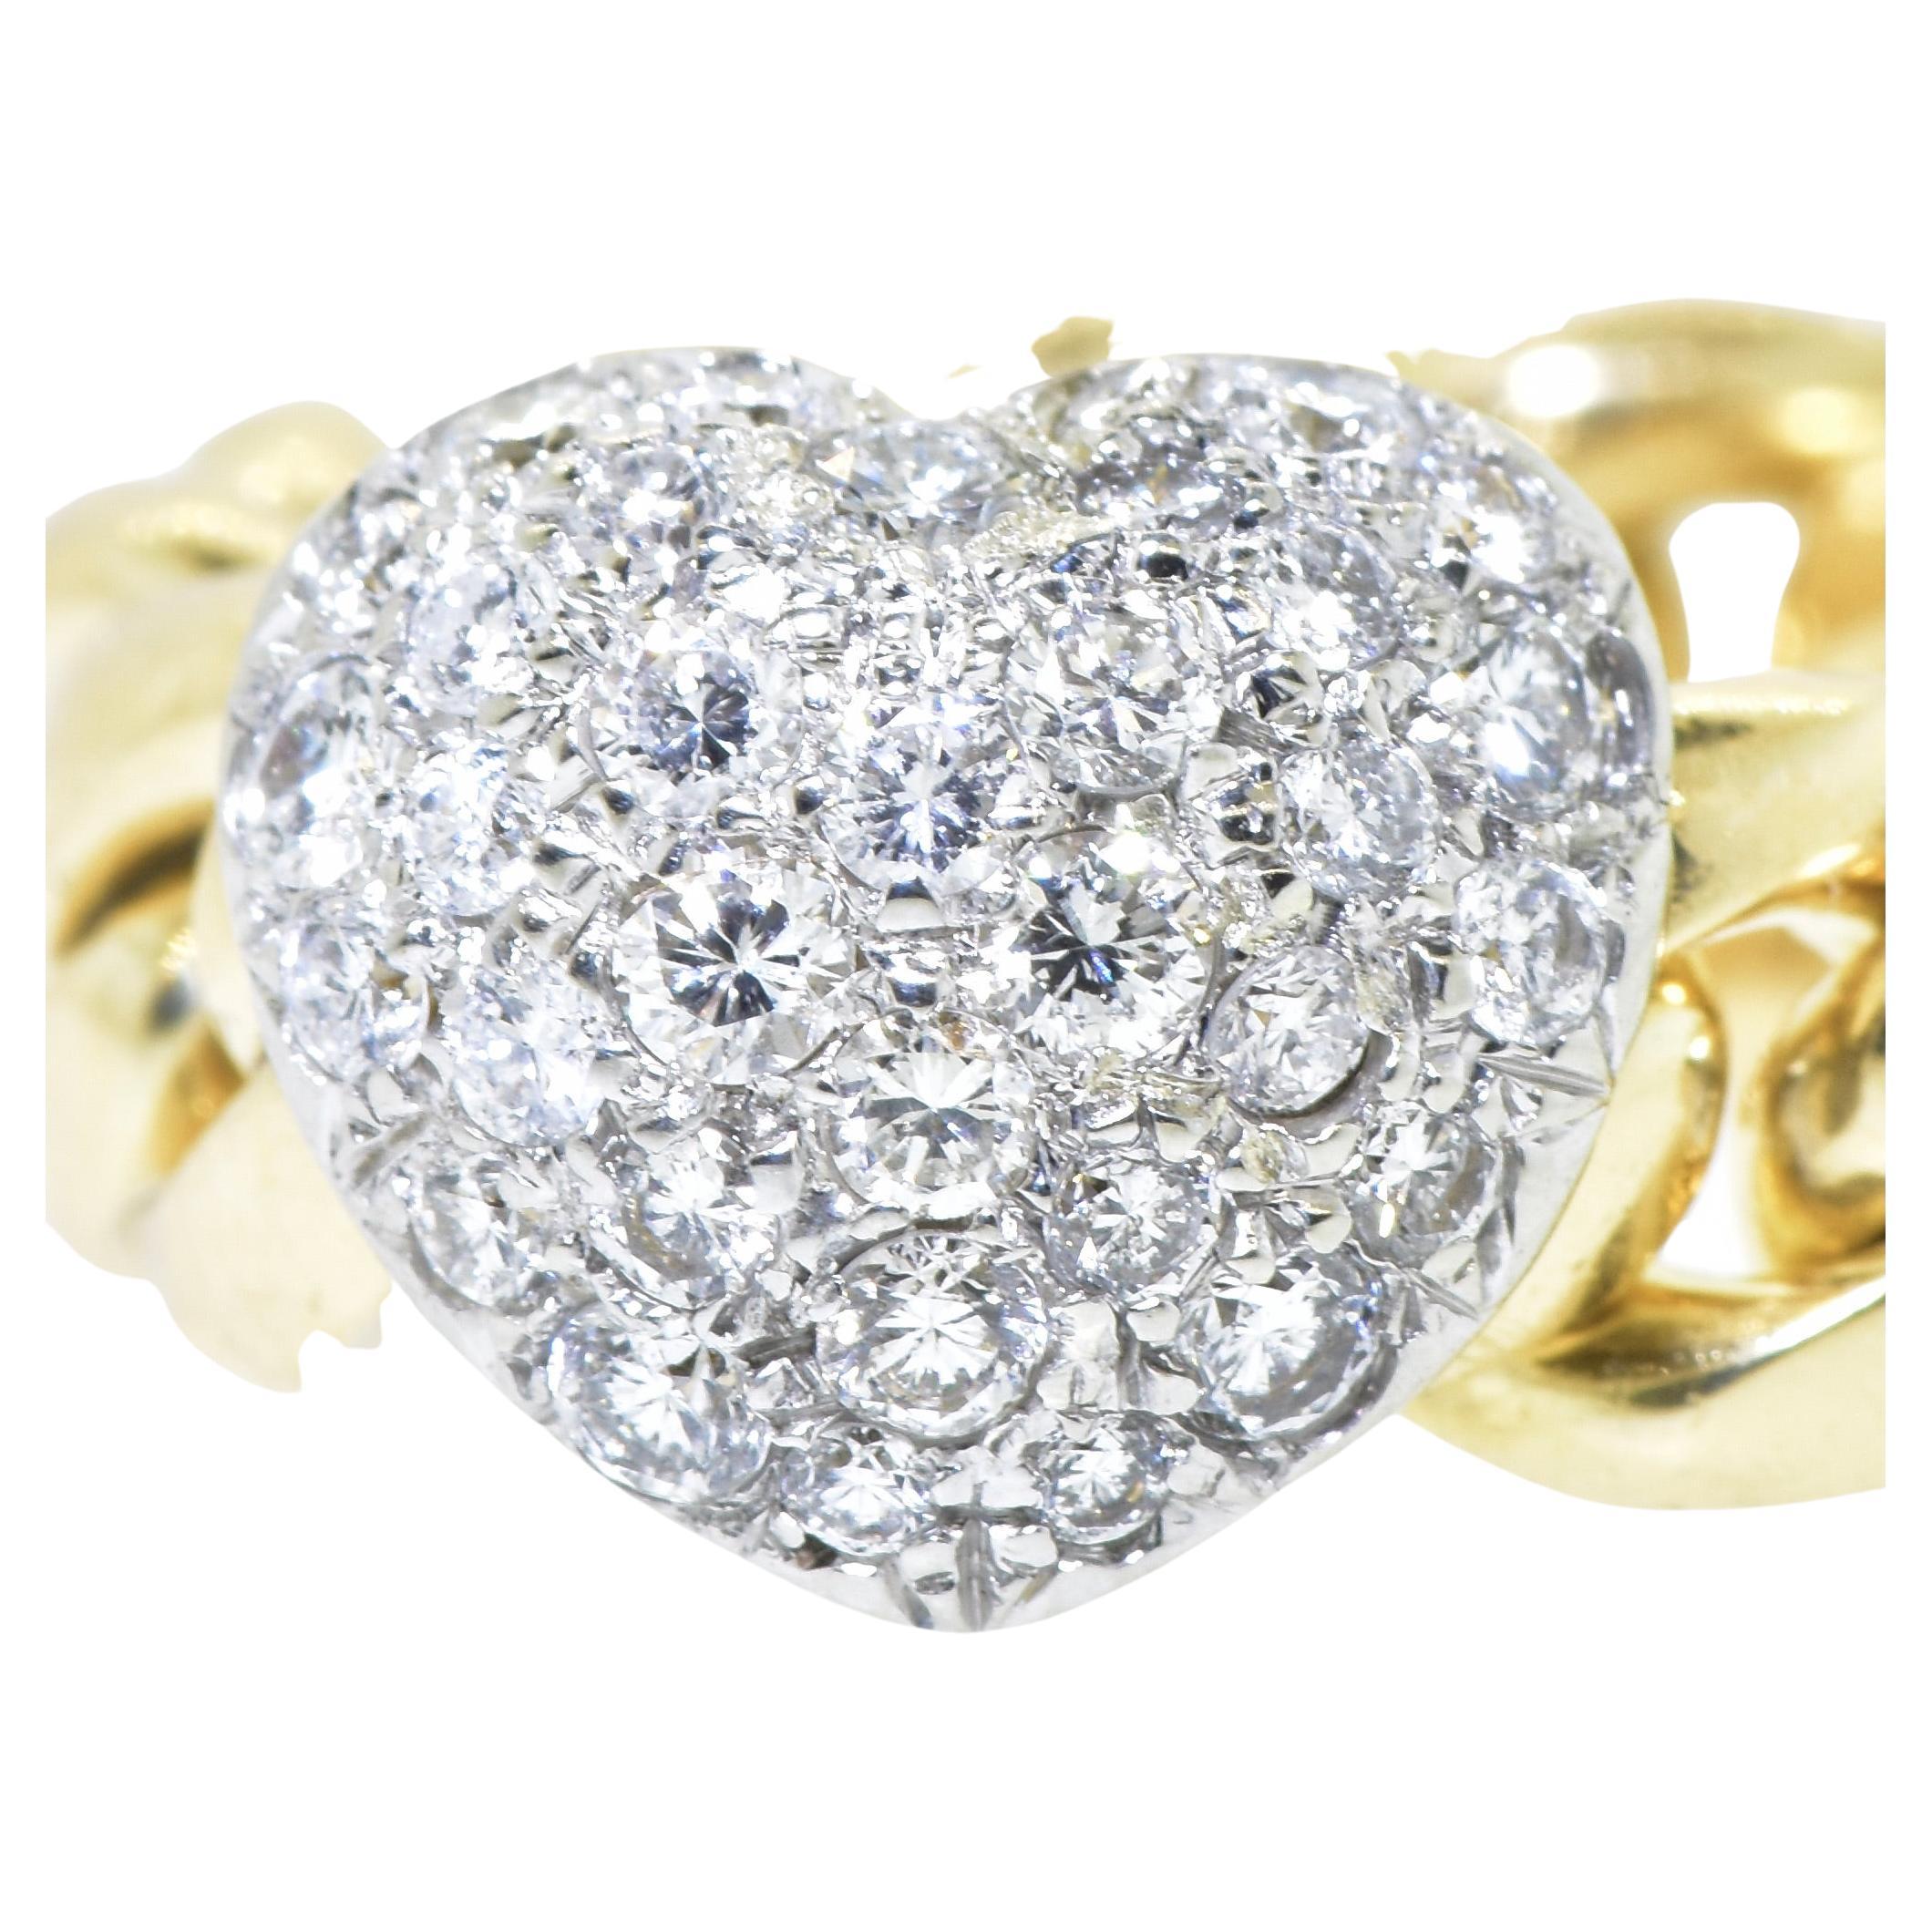 Valente Milano, 18K Yellow & Platinum Pave Diamond Heart Motif Contemporary Ring